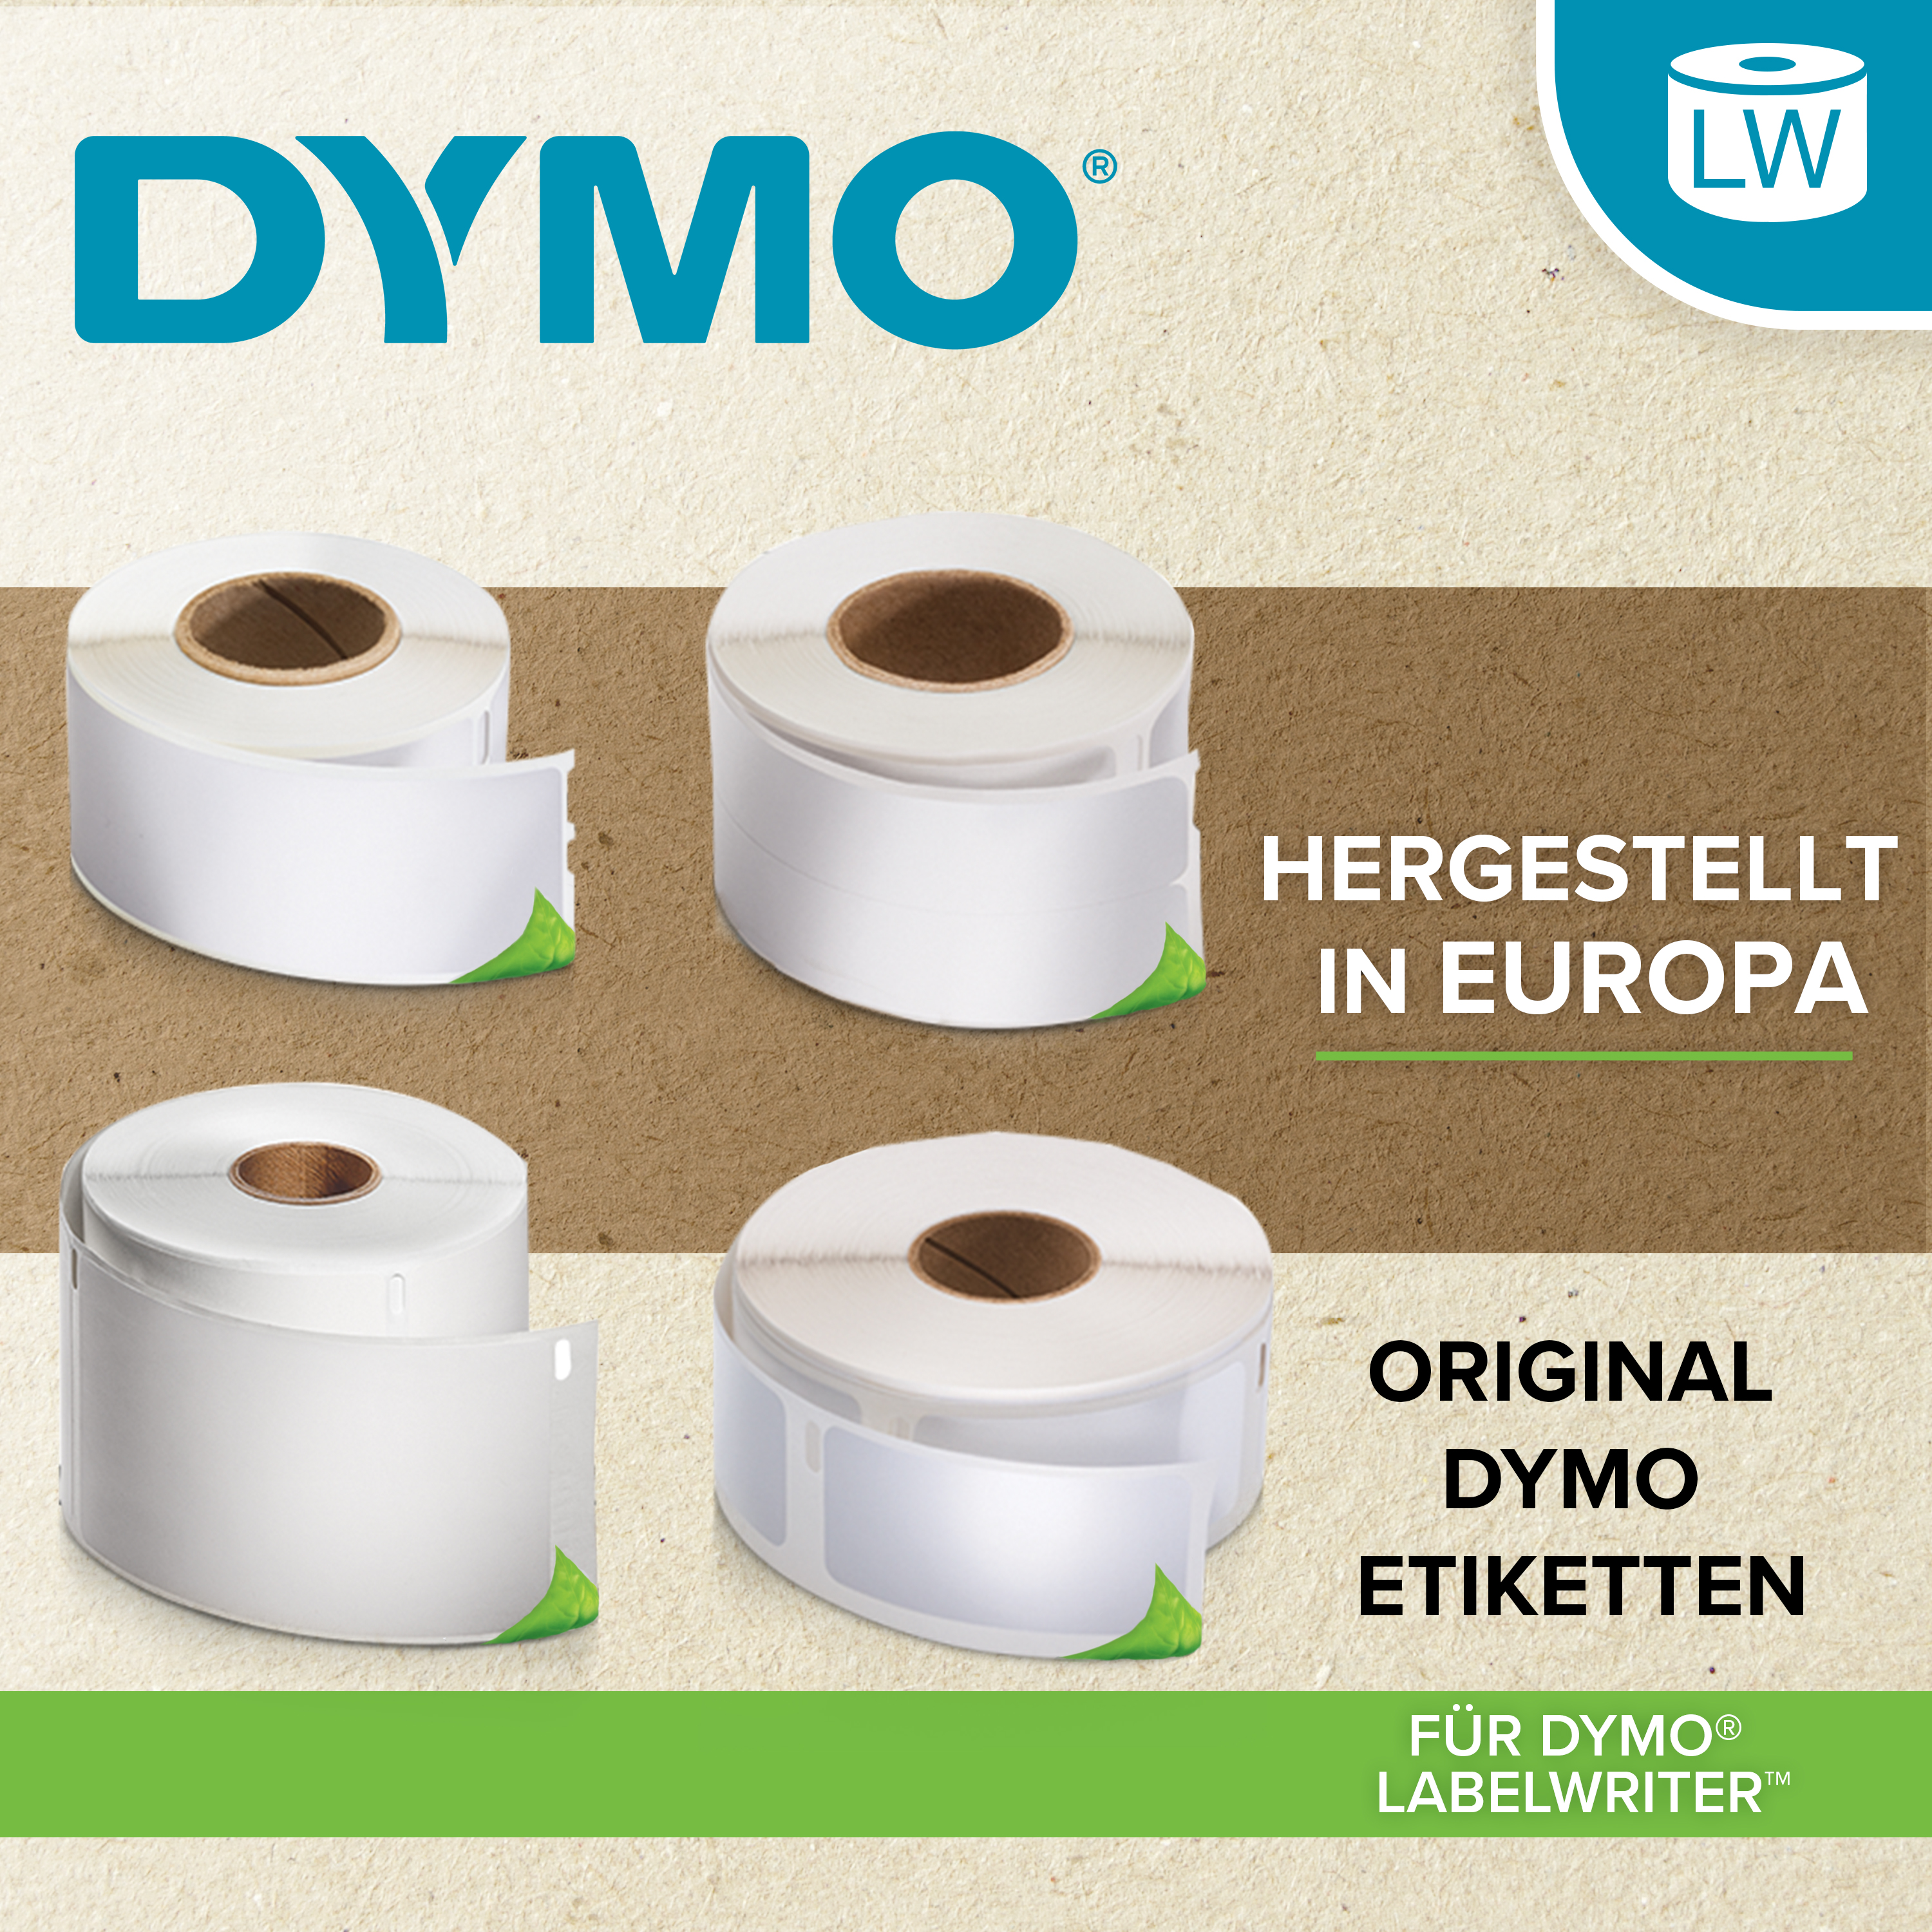 DYMO | Original Etikett für LabelWriter | Adressen | weiß | permanent haftend | 2 x 260 Etiketten | 36 x 89 mm